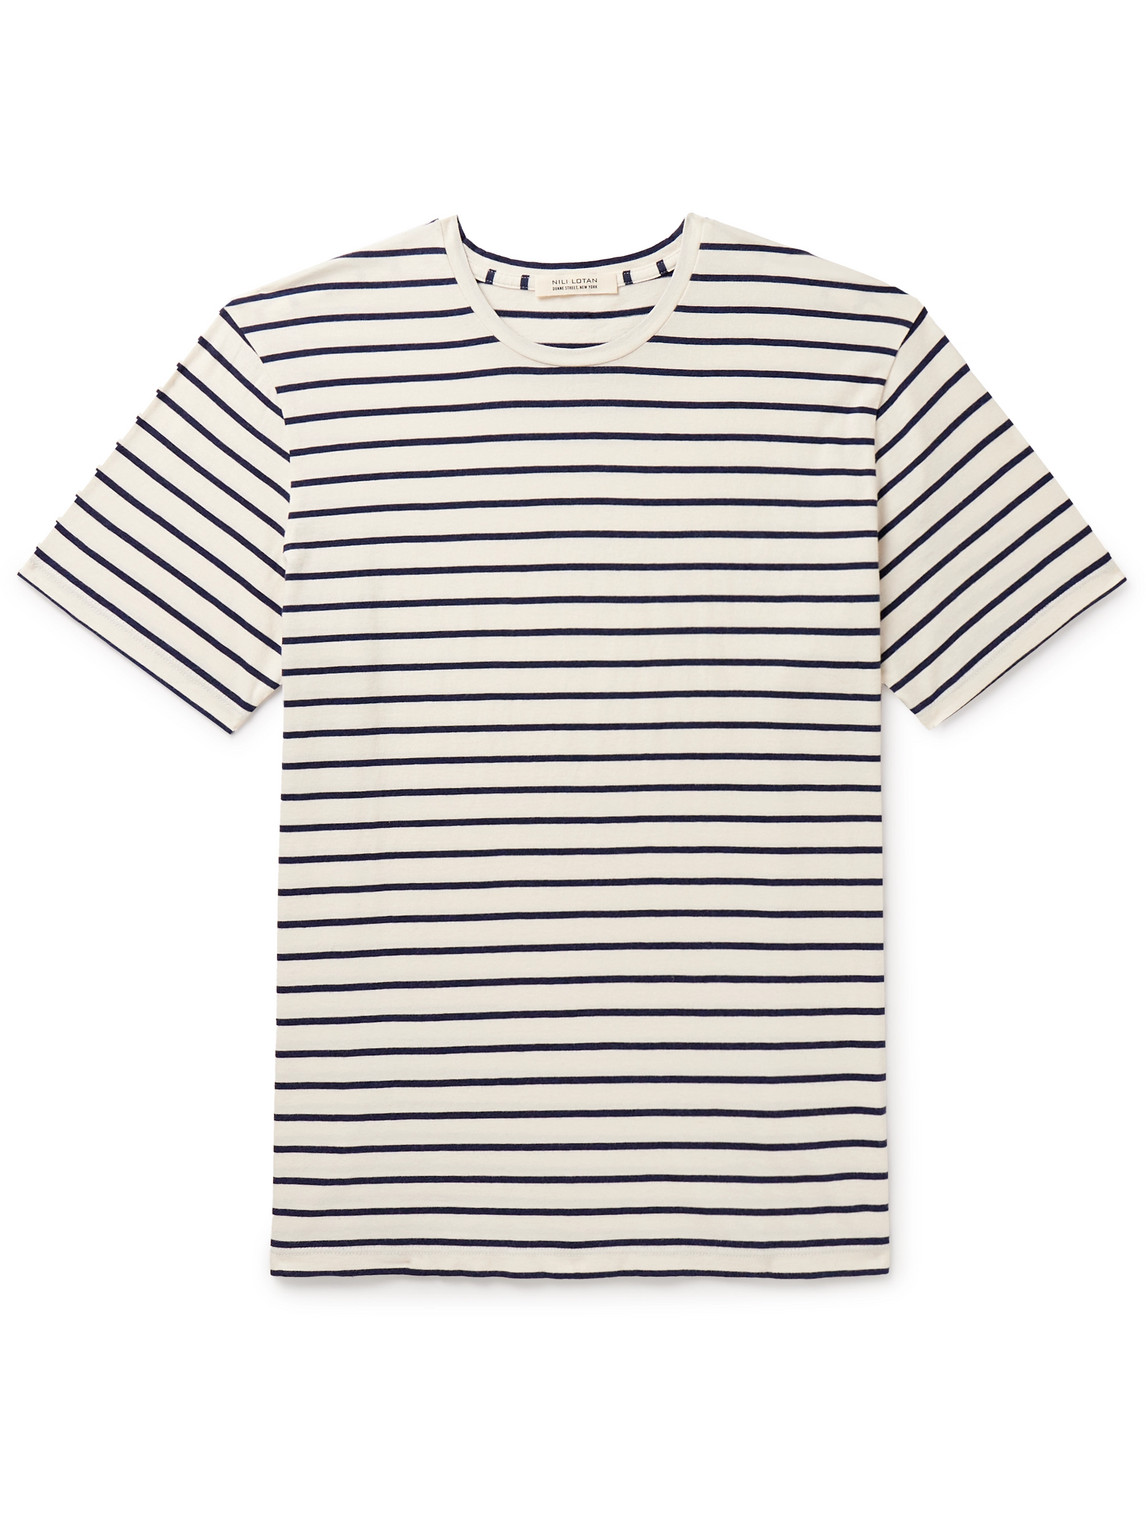 Nili Lotan - Pierre Striped Cotton-Jersey T-Shirt - Men - White - XXL von Nili Lotan